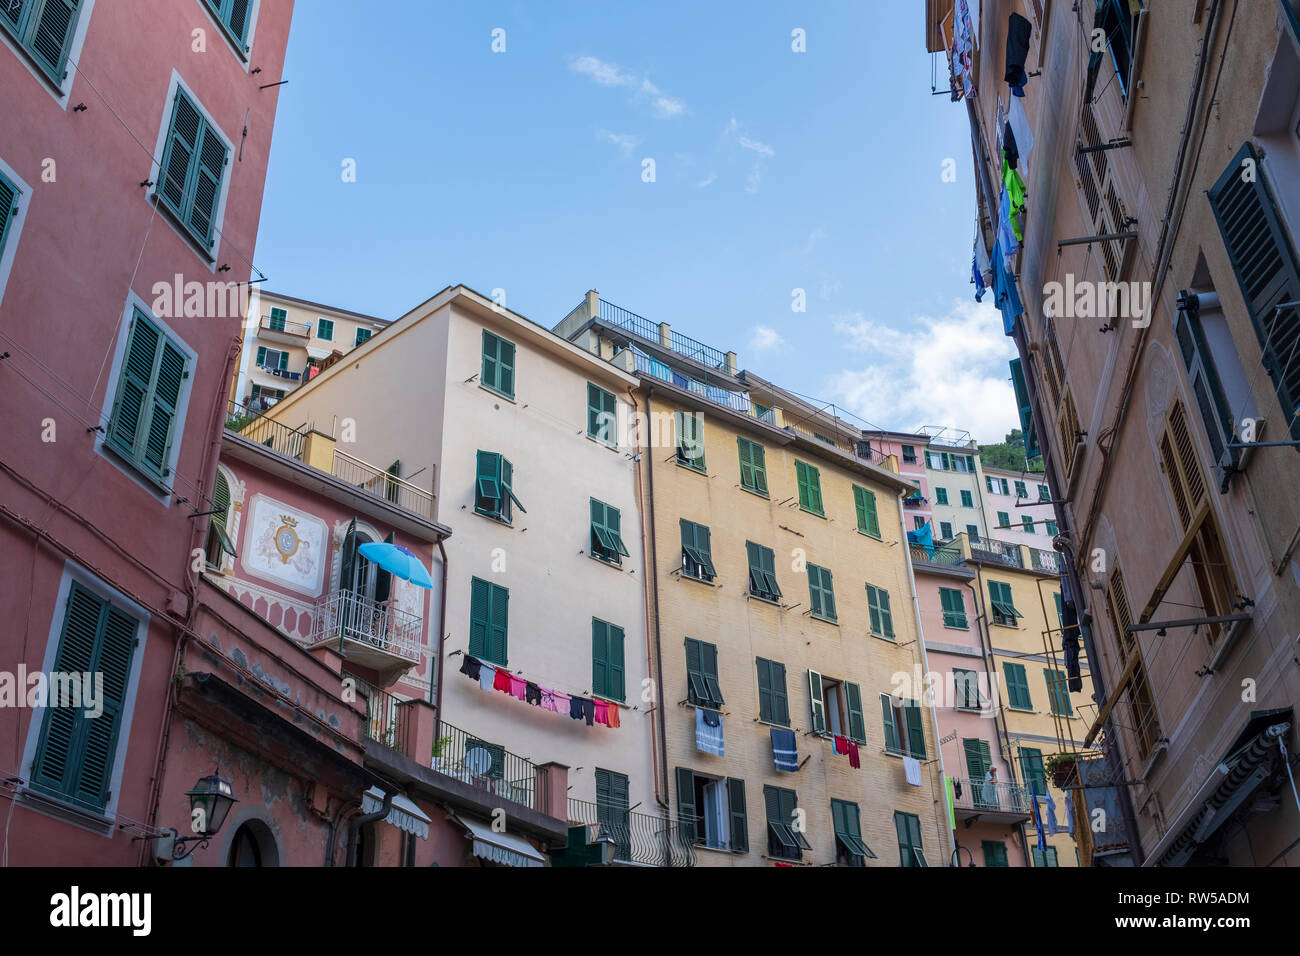 Riomaggiore, a small town in Cinque Terre, Italy Stock Photo